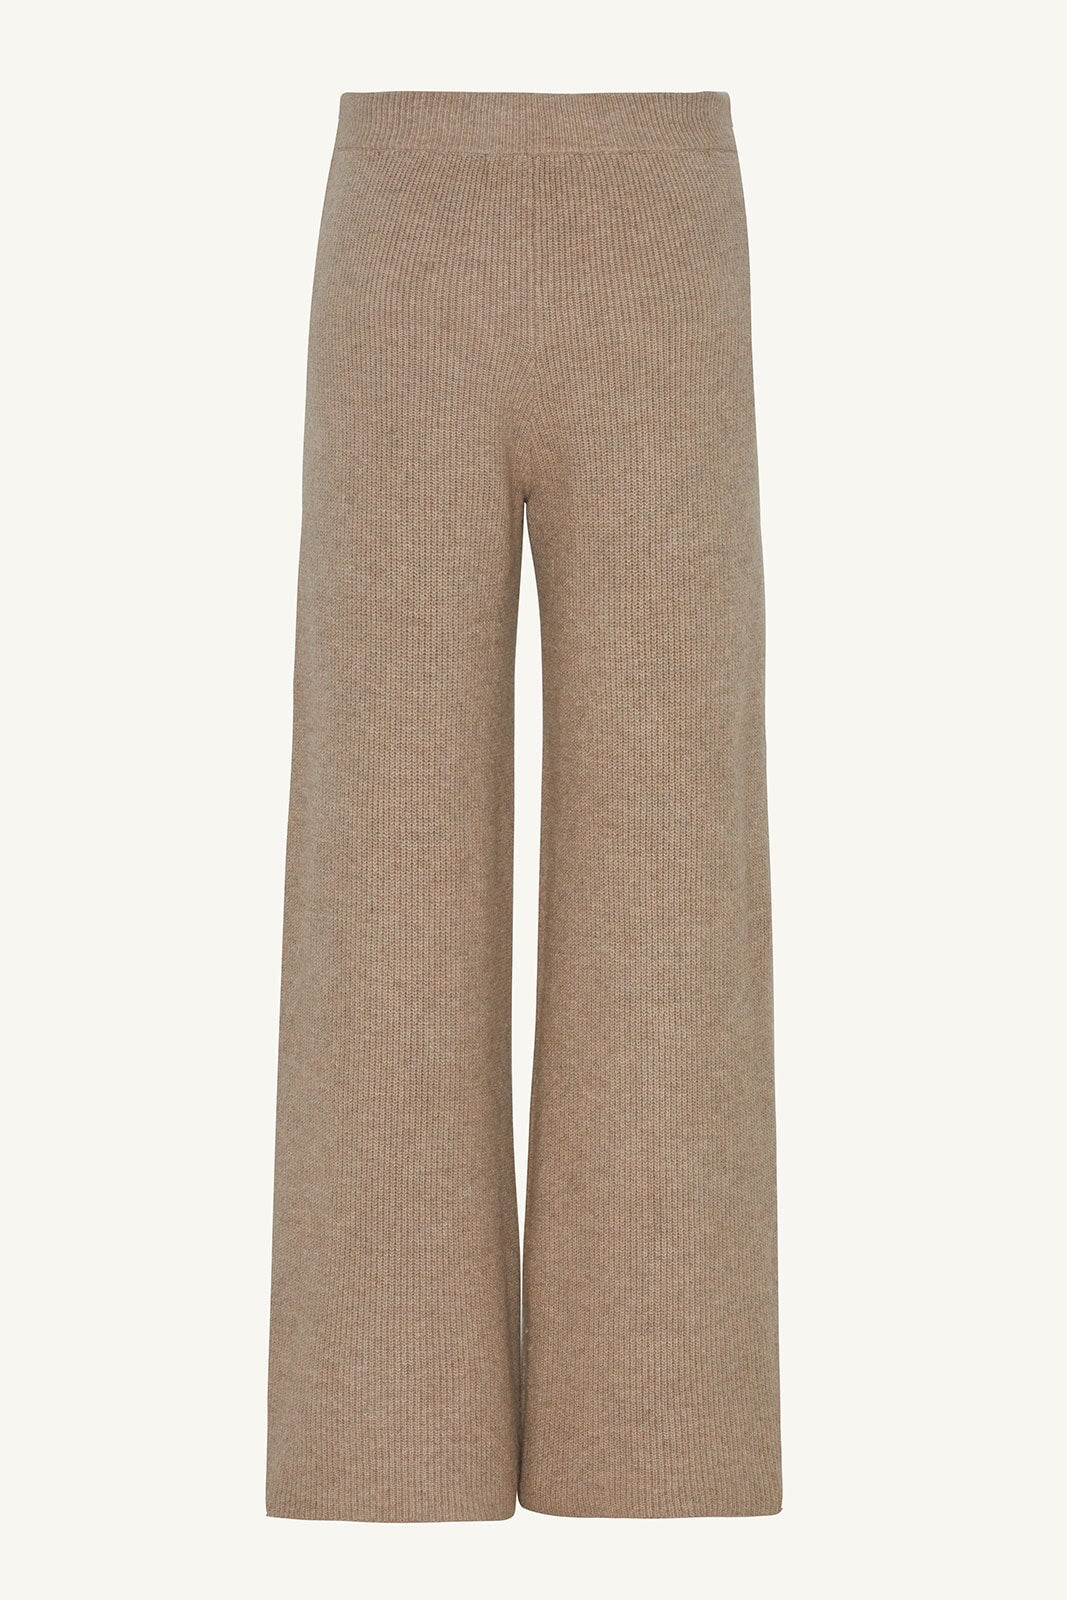 Wool Knit Wide Leg Pants - Cobblestone Clothing epschoolboard 